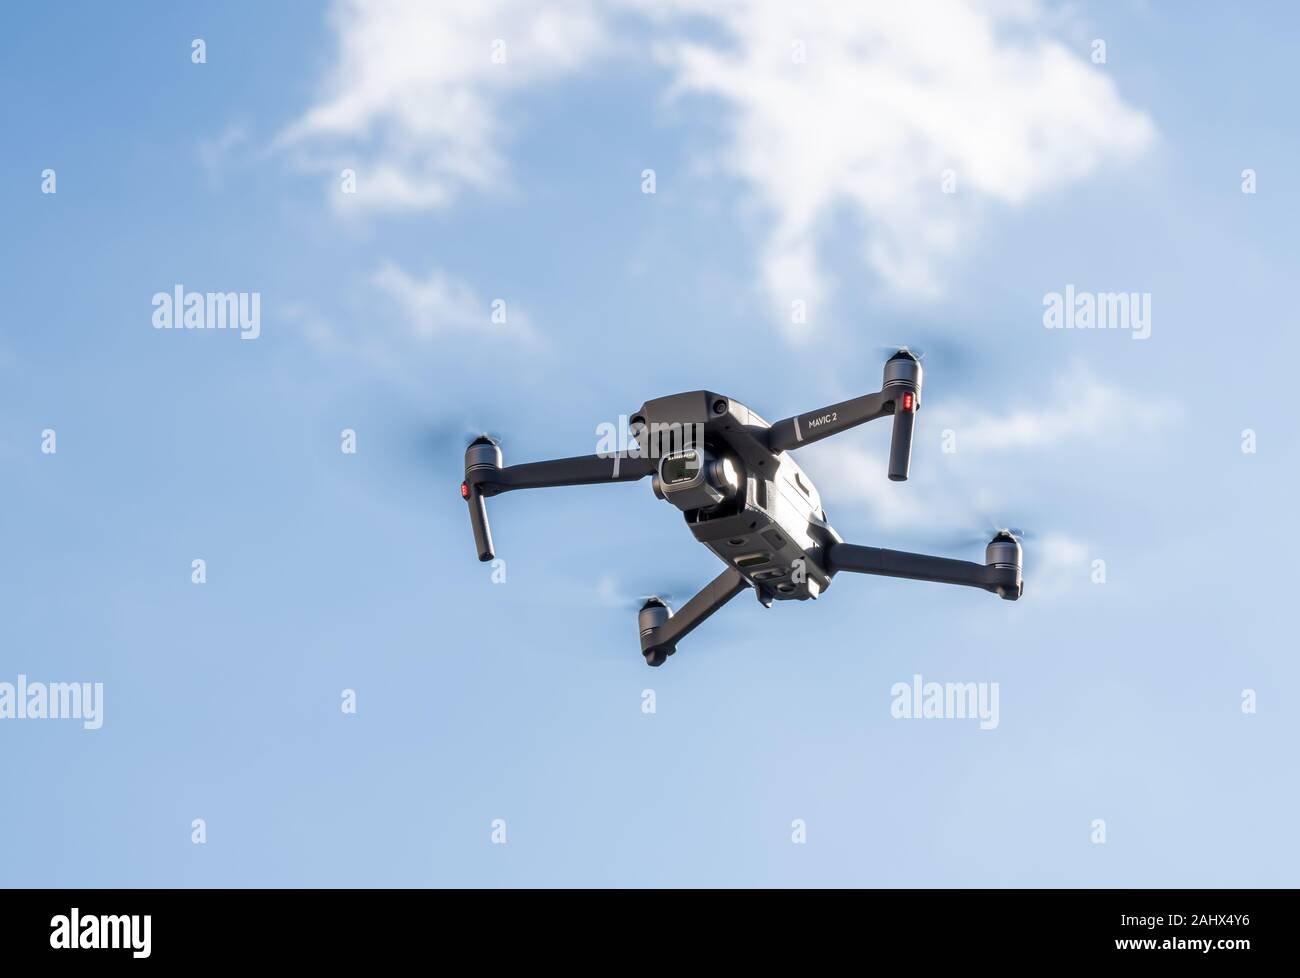 Morgantown, WV - 1 janvier 2020 : DJI quadcopter Mavic 2 Pro ou drone planant dans le ciel bleu Banque D'Images